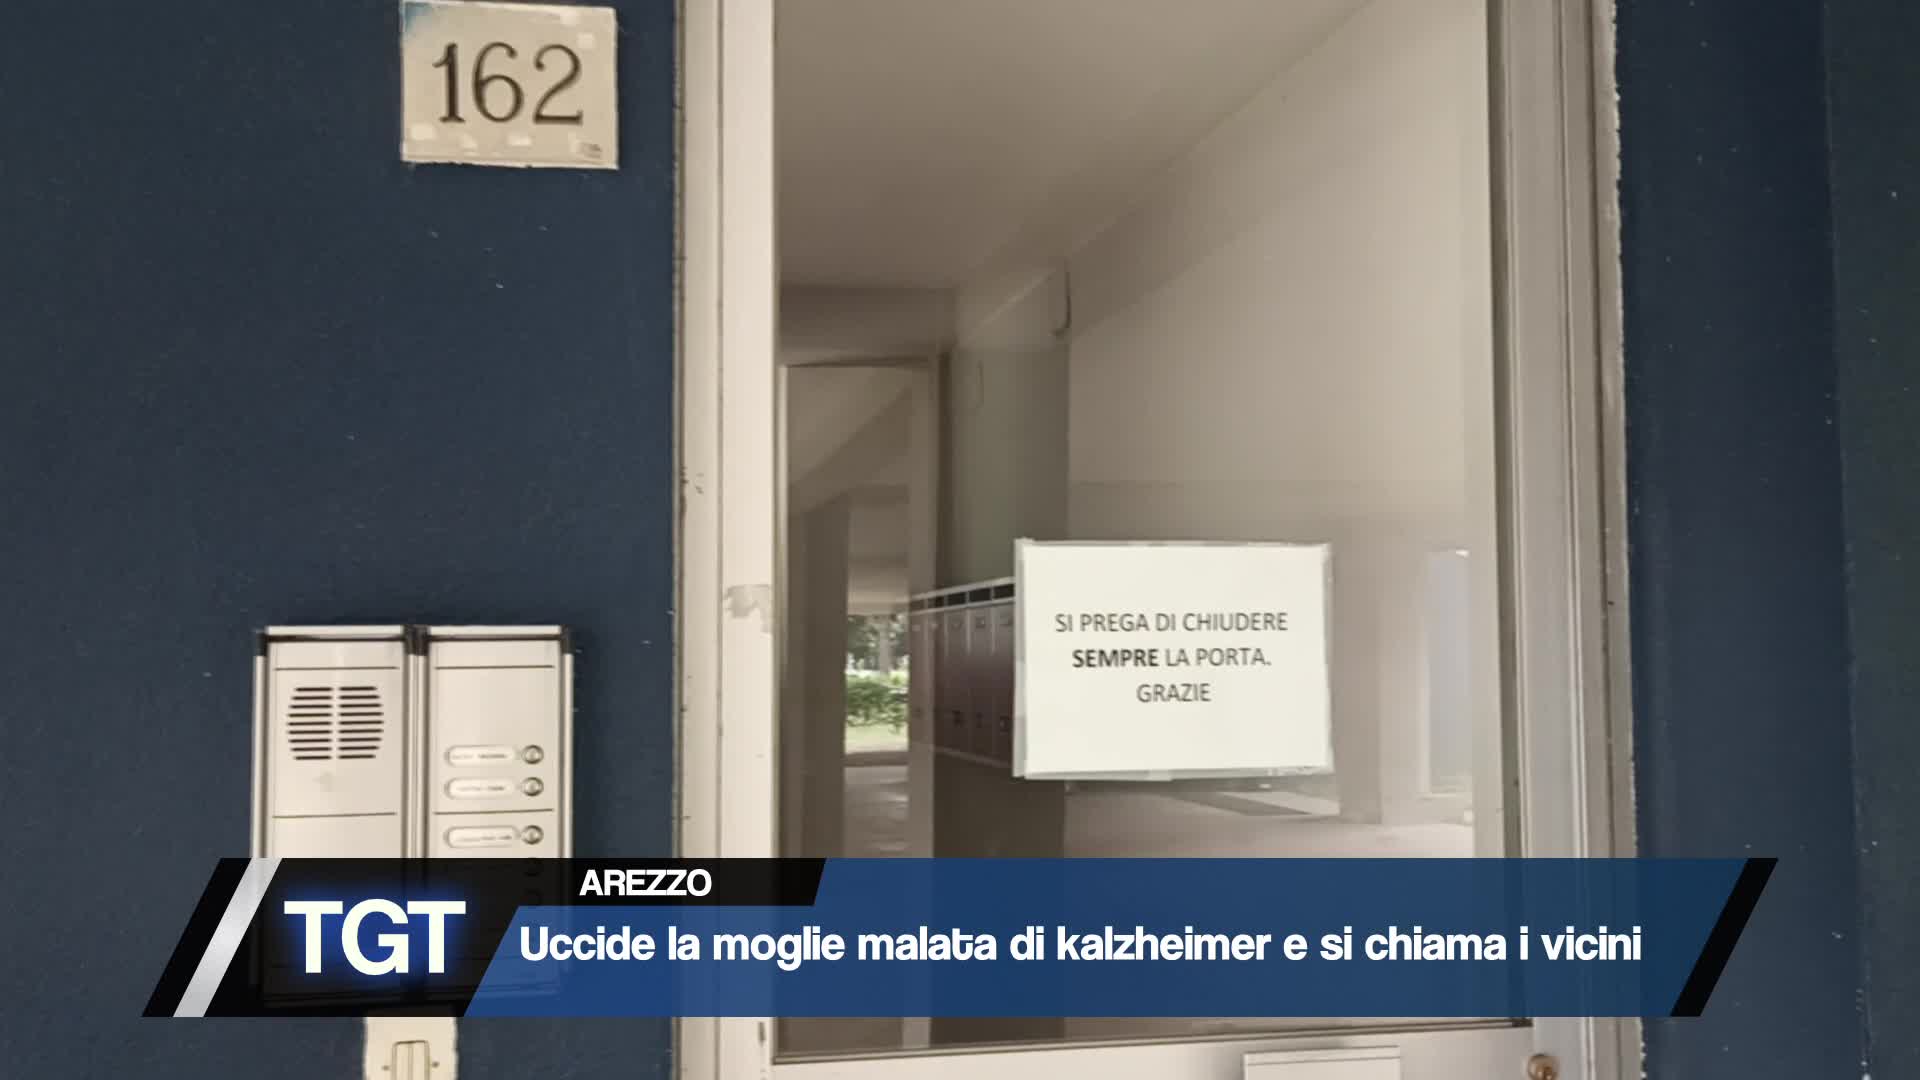 Arezzo - Uccide la moglie e chiama i vicini Thumbnail